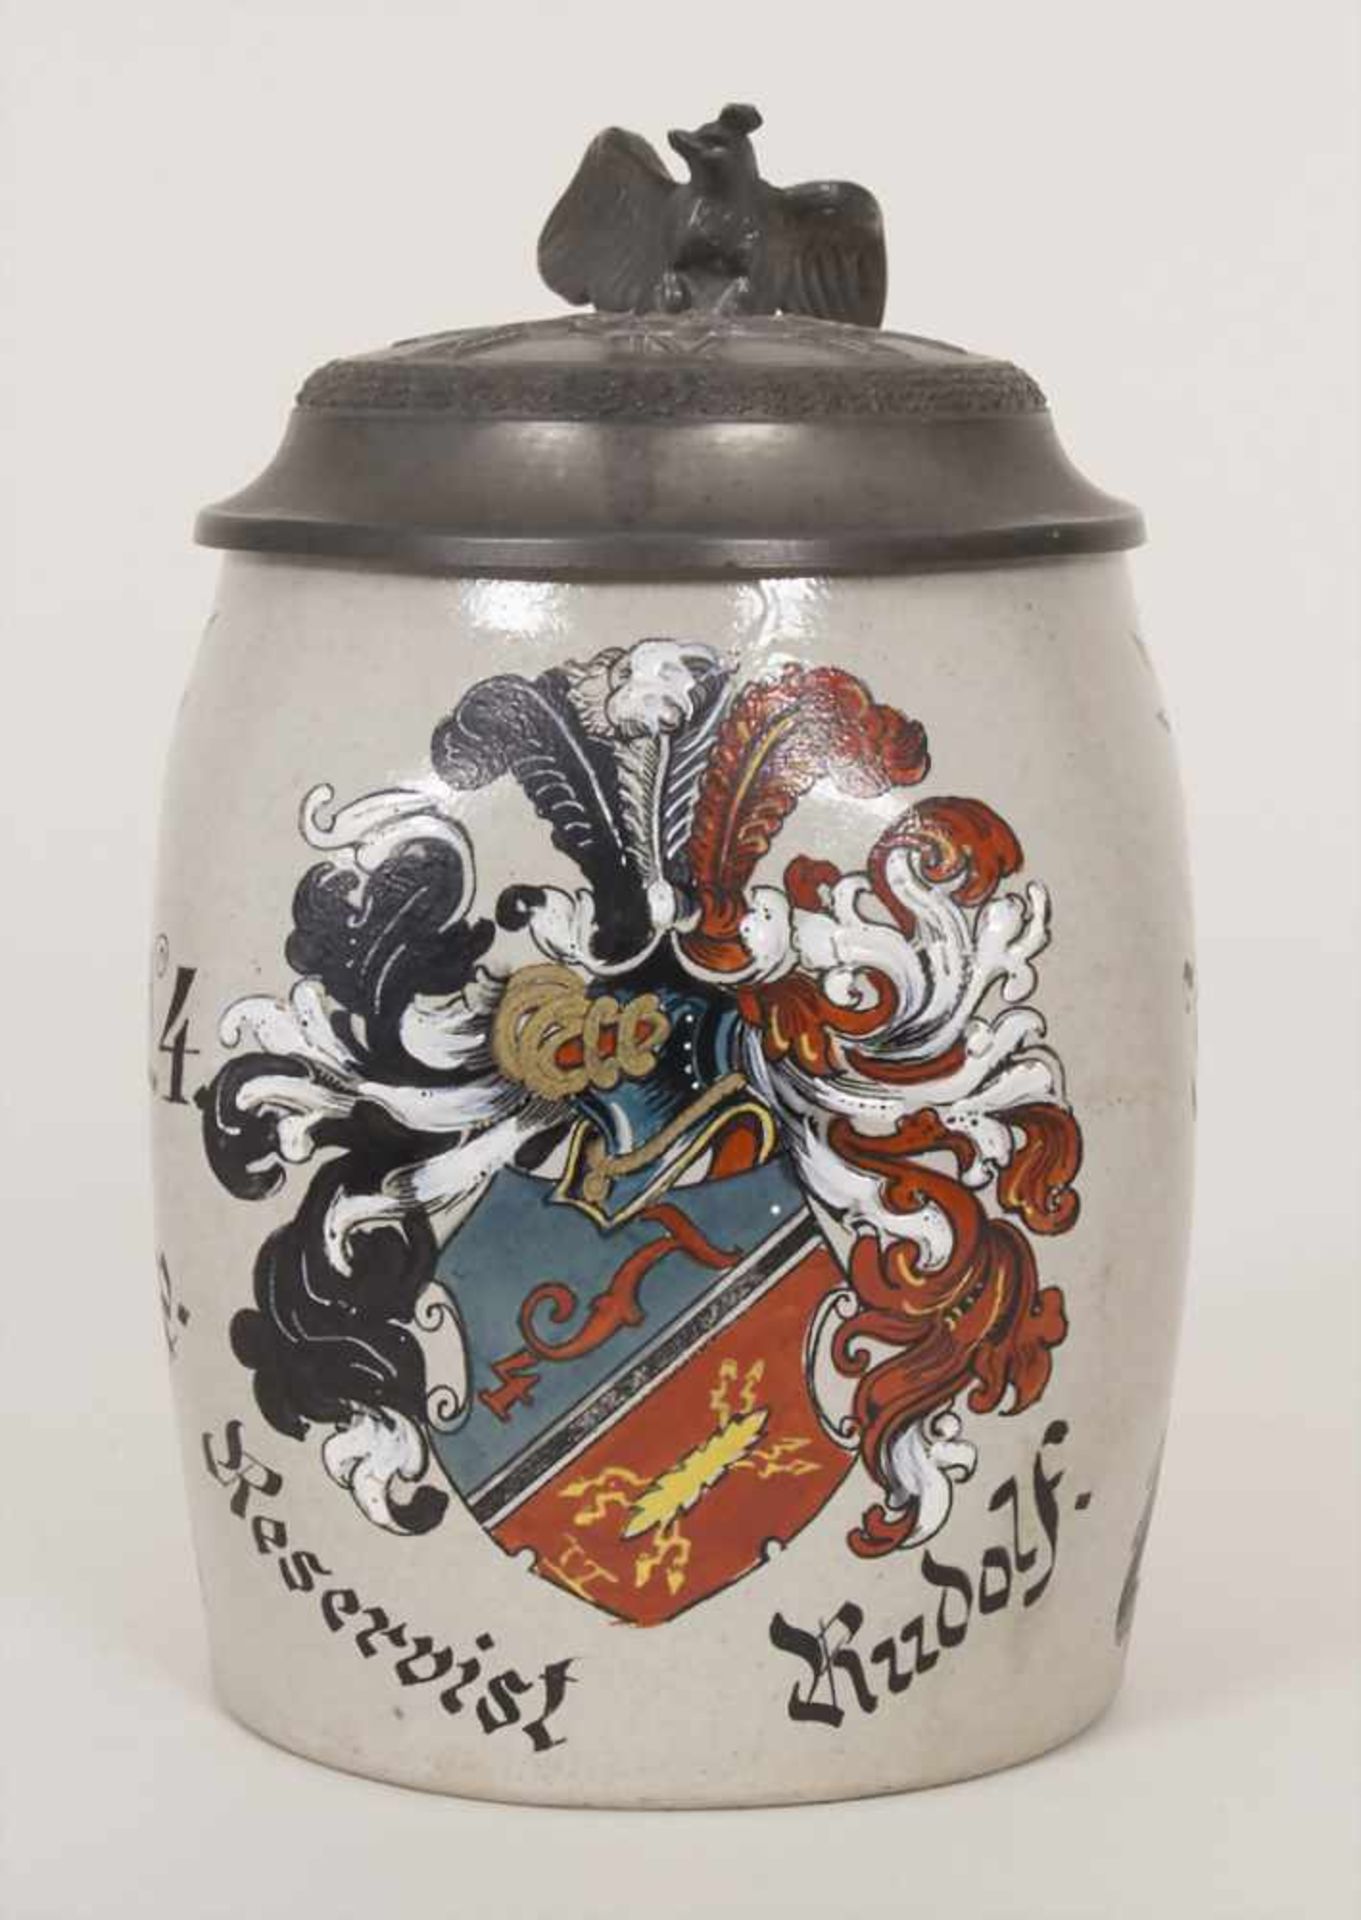 Reservistenkrug und Ordenspange mit Urkunden / A reservist beer mug and military orders, - Image 2 of 23